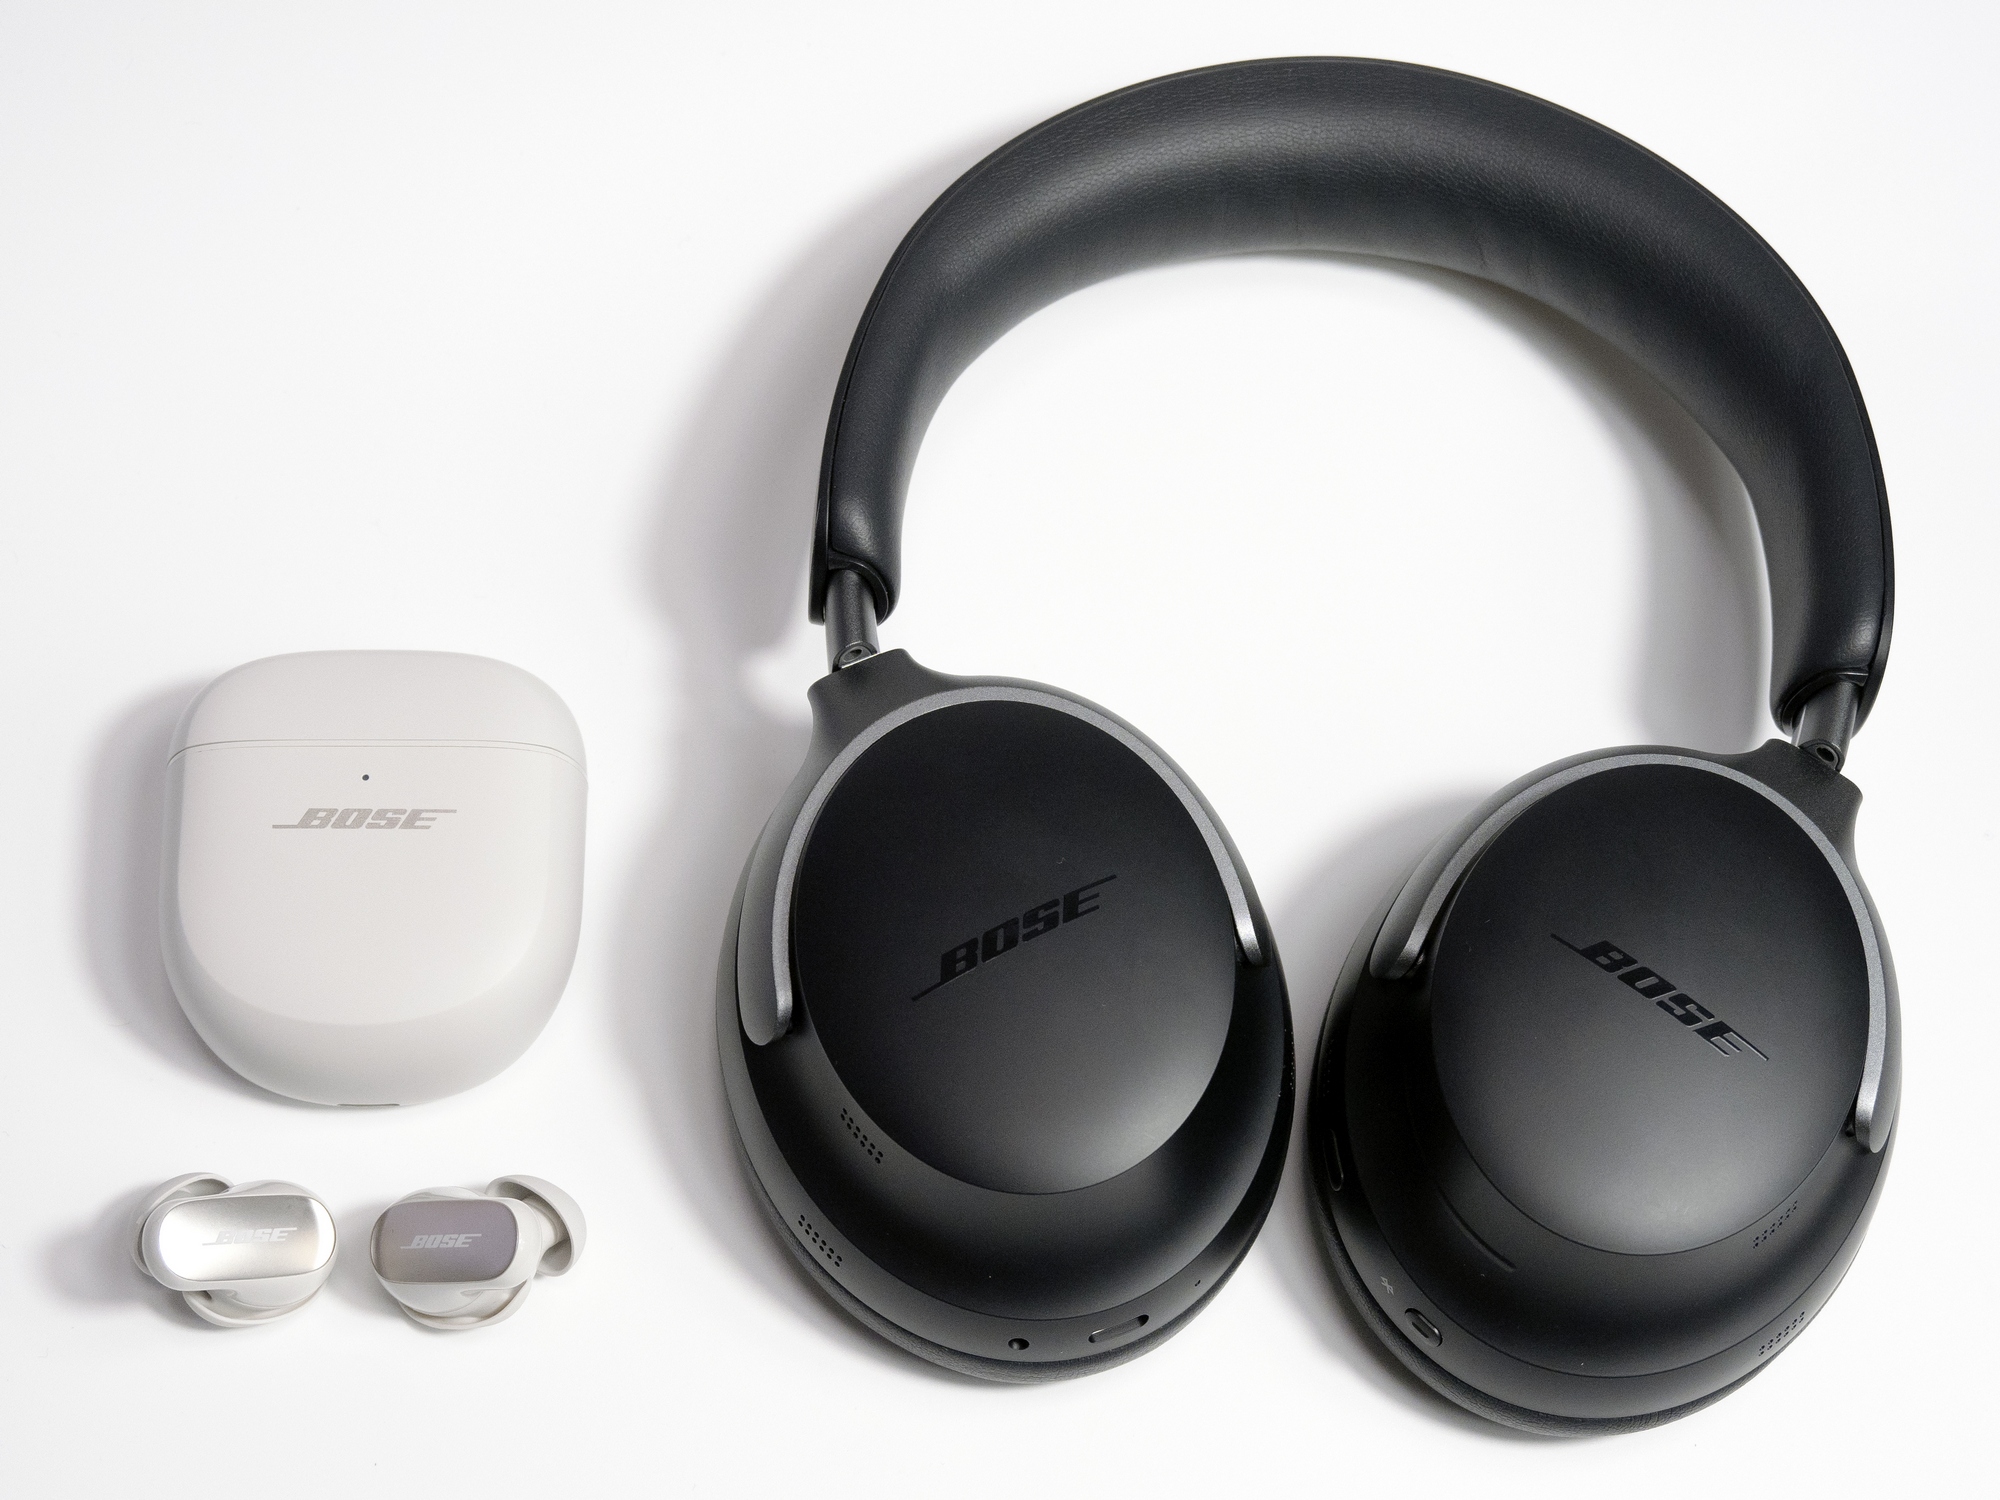 Bose Bluetooth headset Series 2 左耳 イヤホン - イヤホン